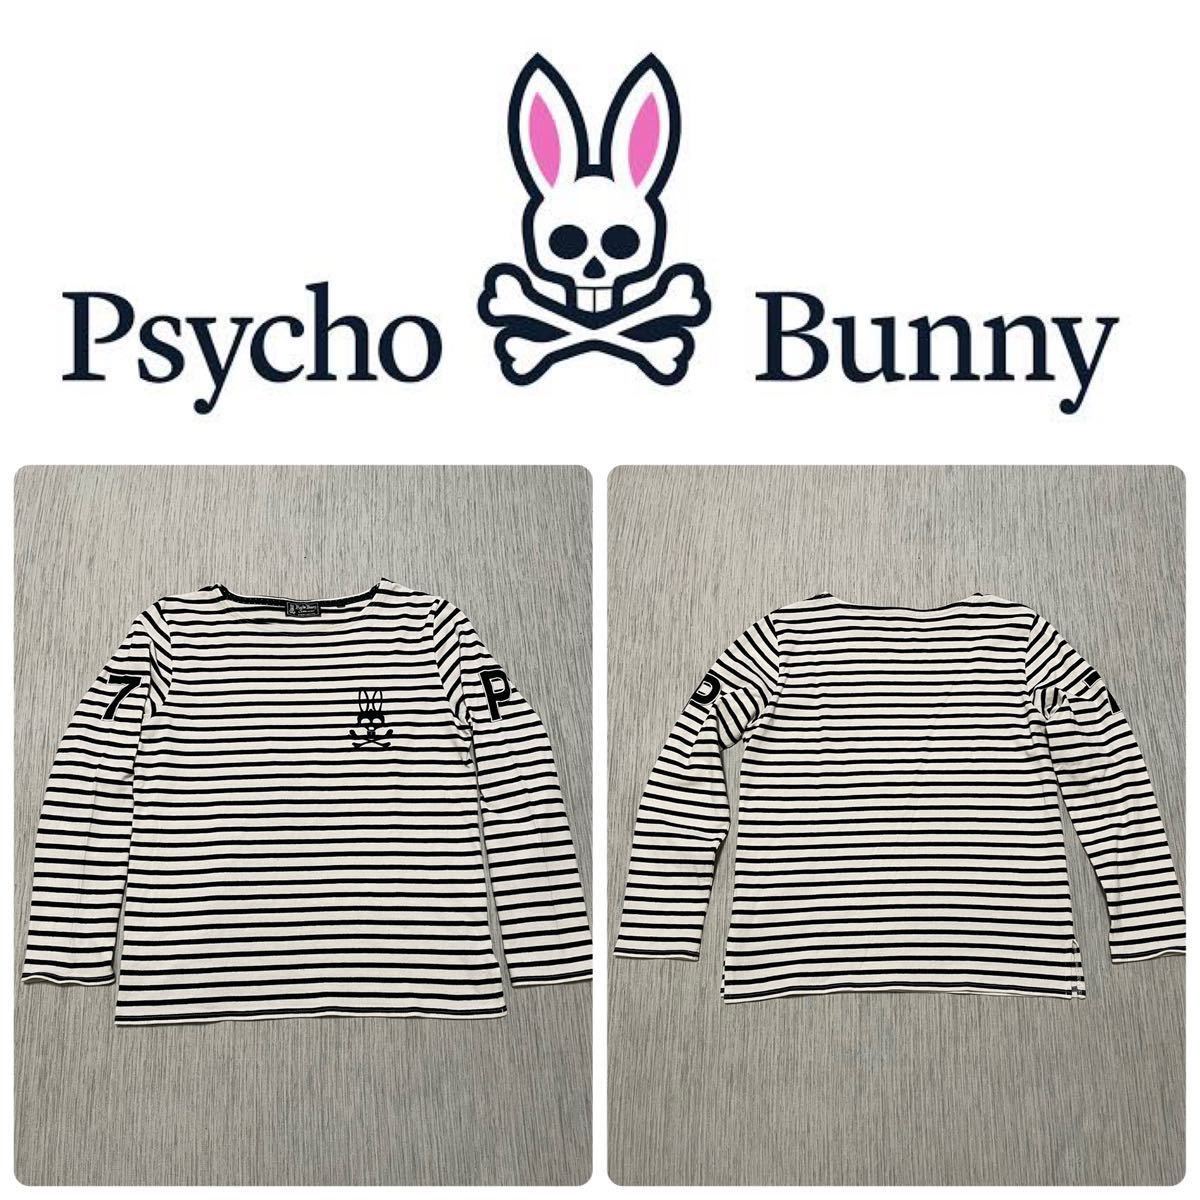 psycho bunny サイコバニー ロゴ 刺繍 ナンバリング マリンボーダー ボートネック カットソー シャツ XL ロンT 長袖 GOLF ウェア_画像1